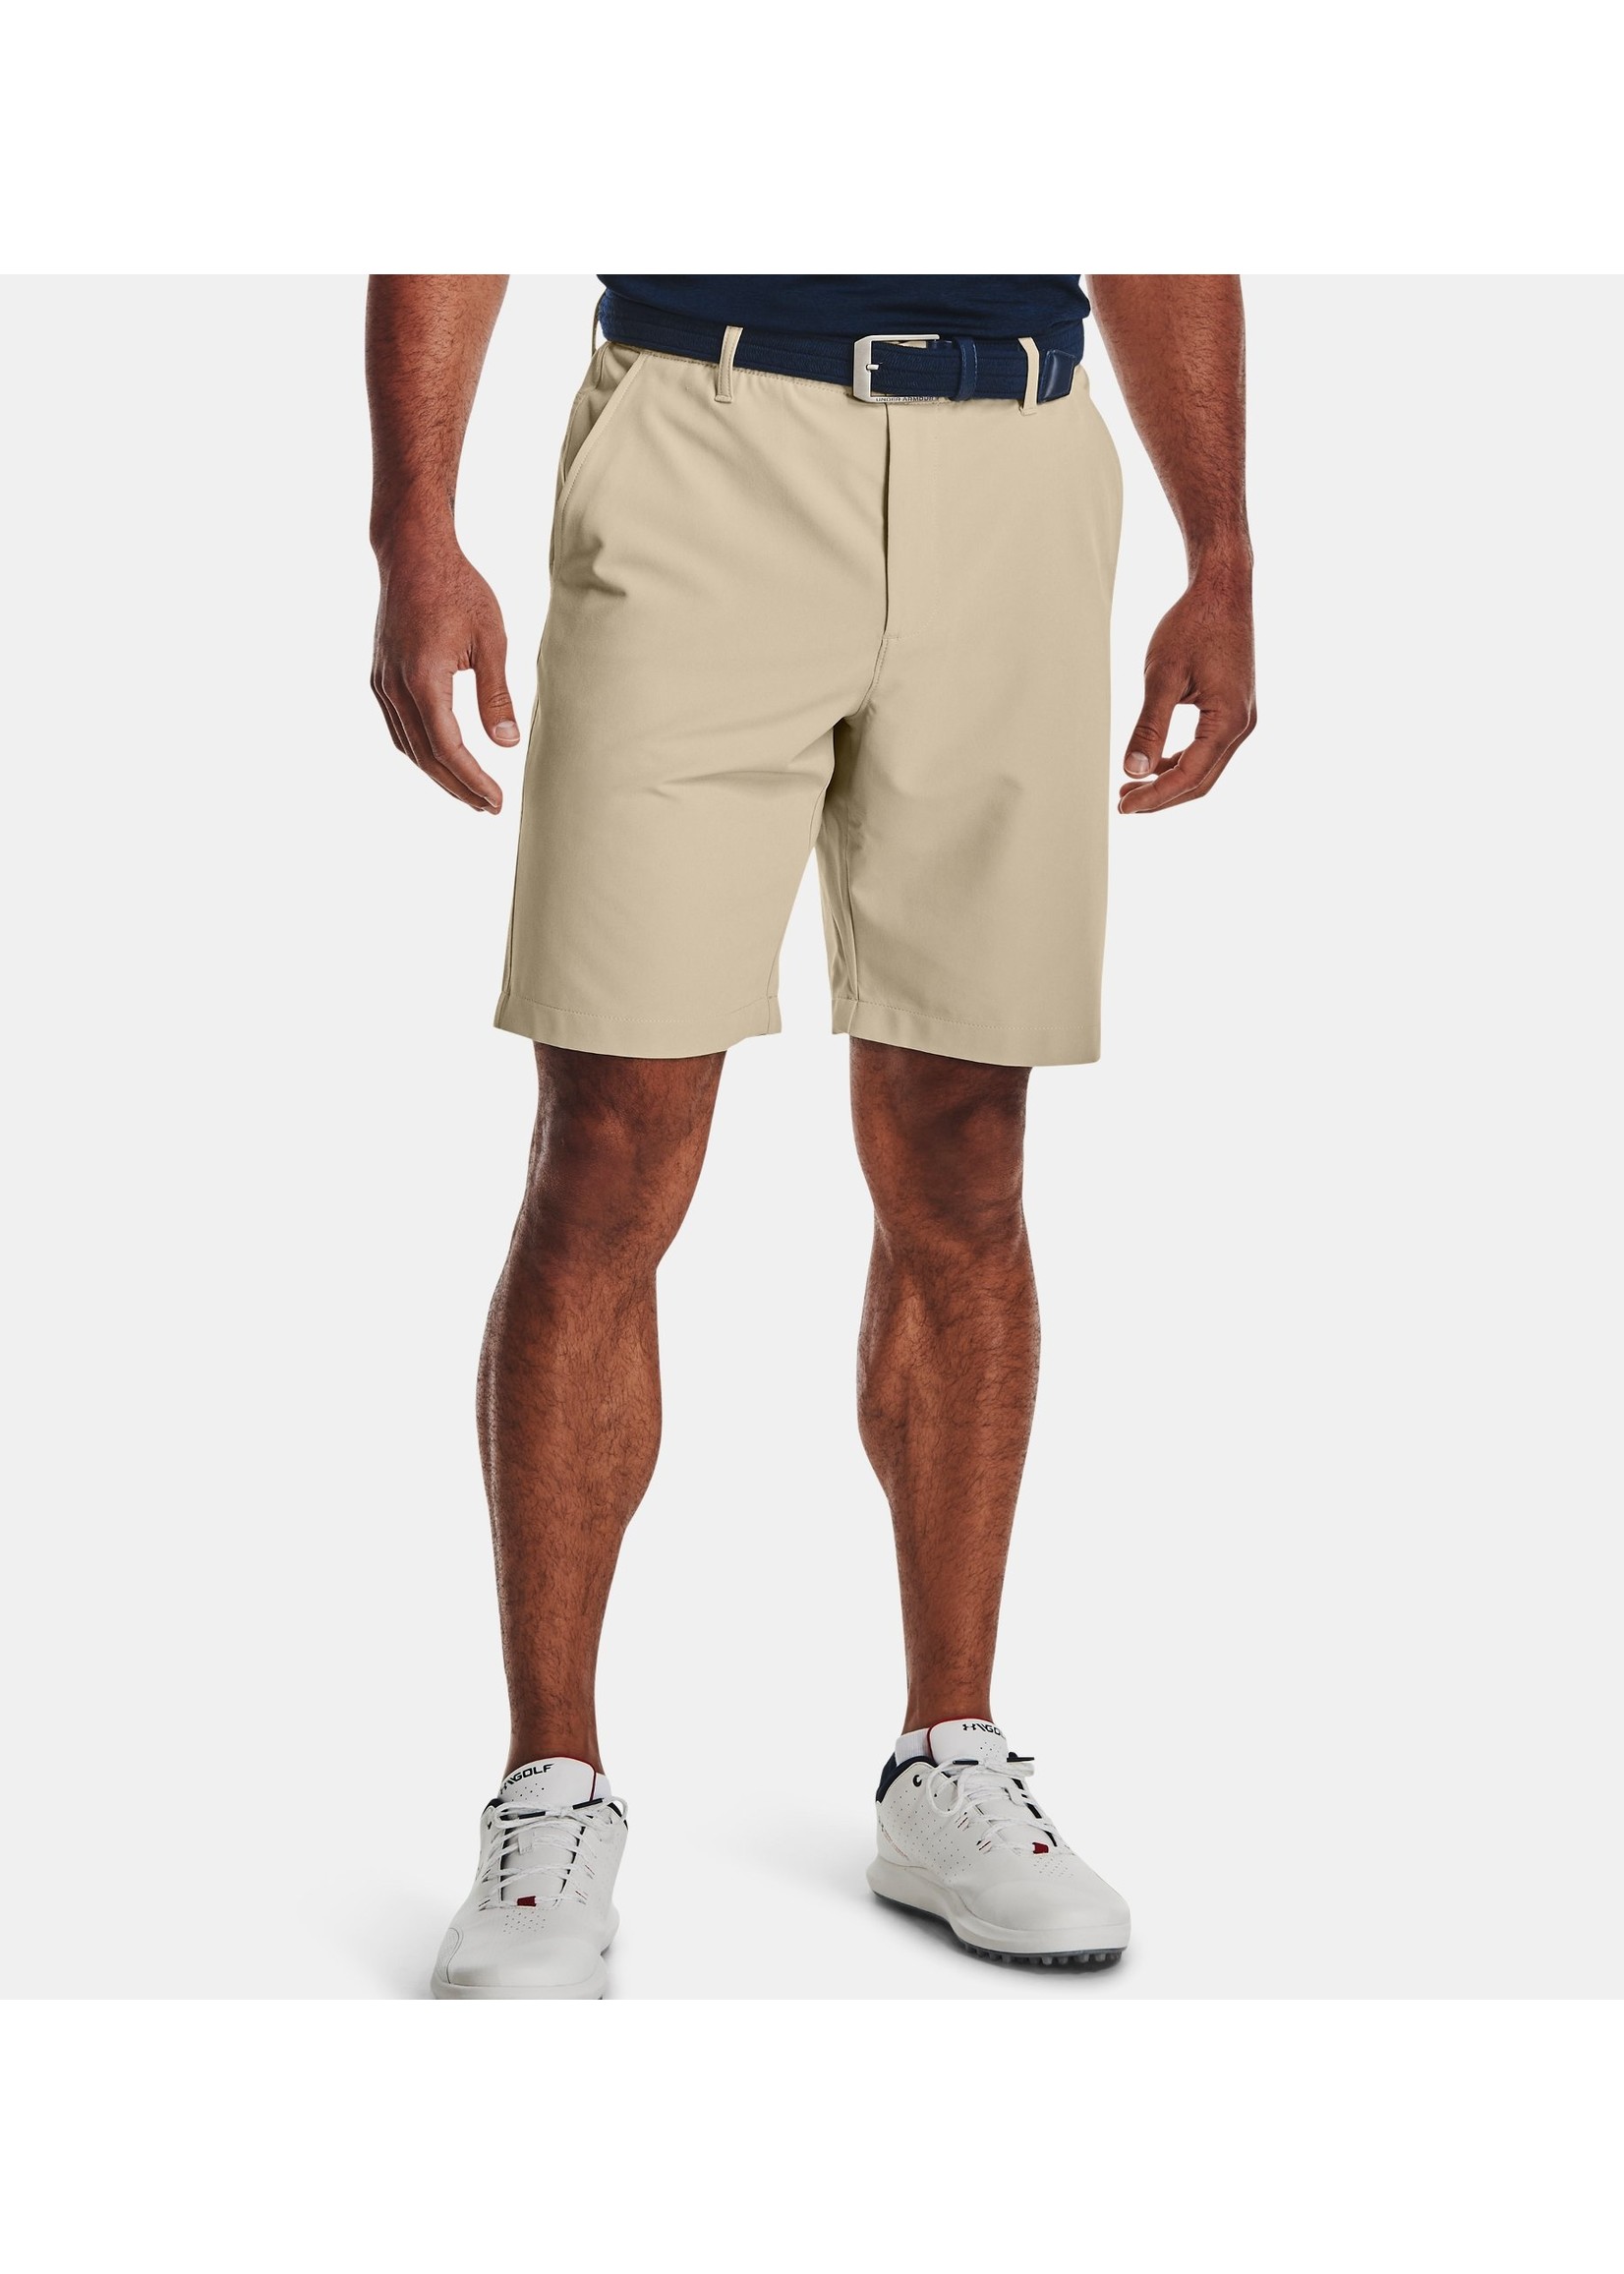 UNDER ARMOUR Men's UA Drive Shorts